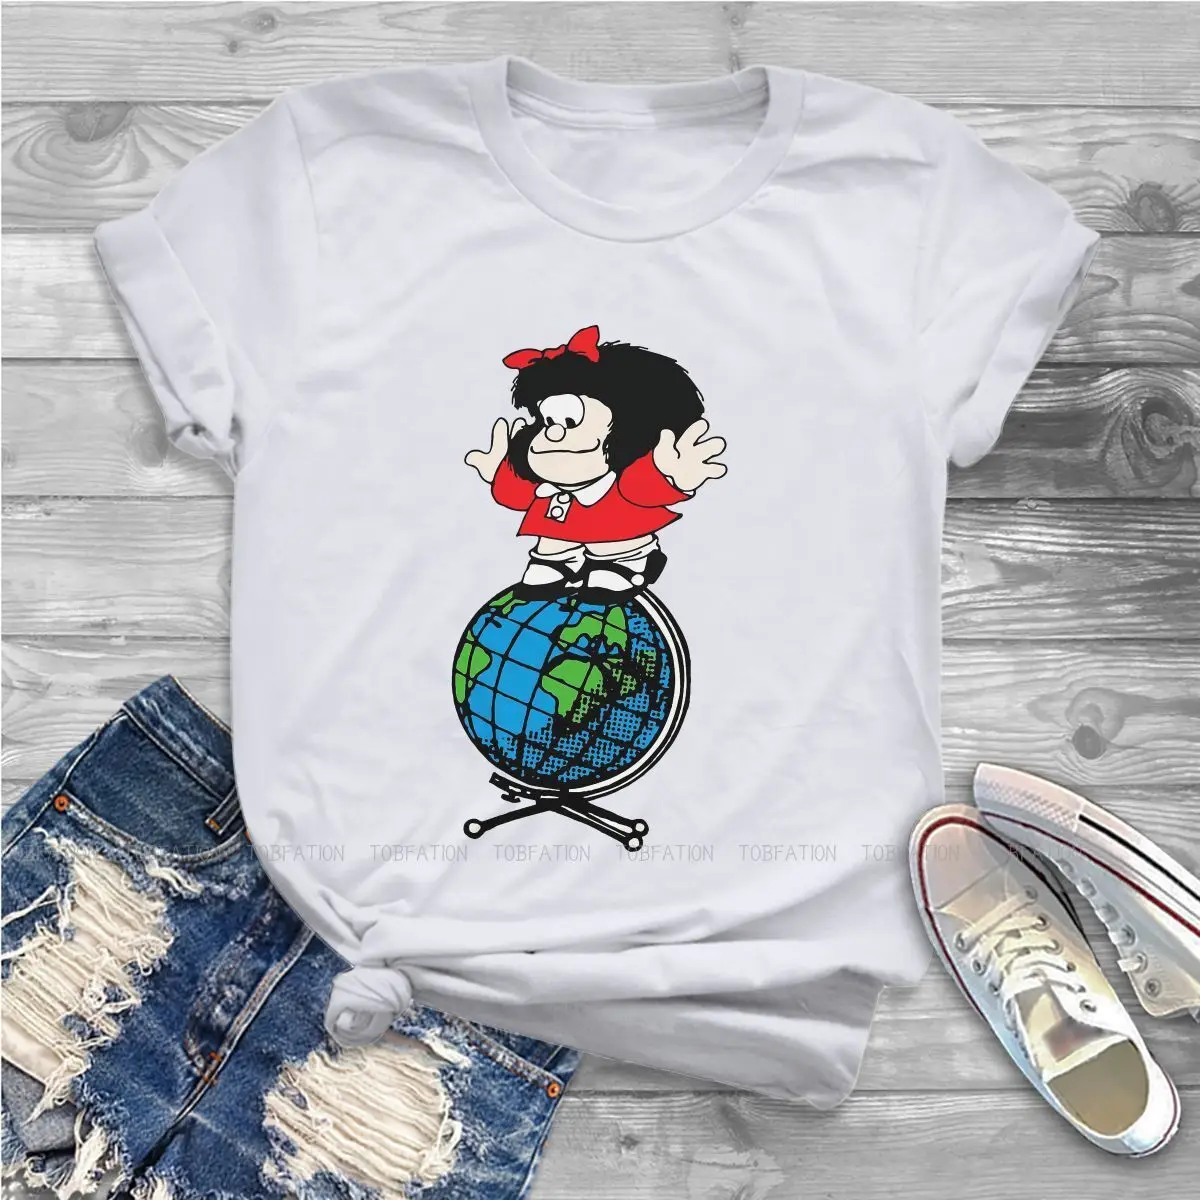 

Футболка для девочек выше мира Mafalda комикс Quino футболки стильная женская футболка 5XL мягкий принт оверсайз